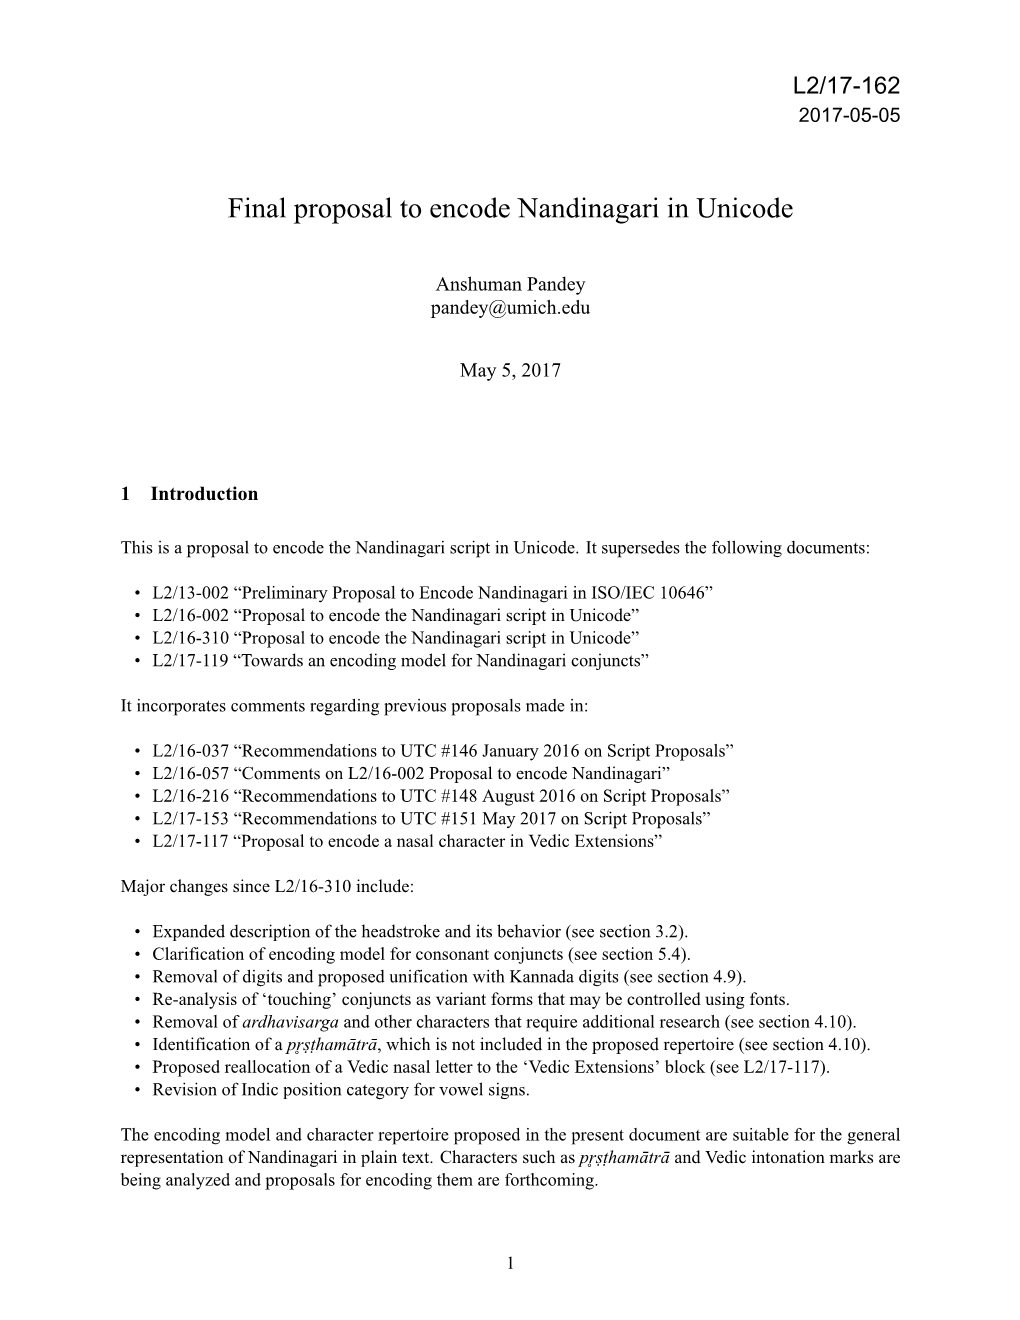 Final Proposal to Encode Nandinagari in Unicode